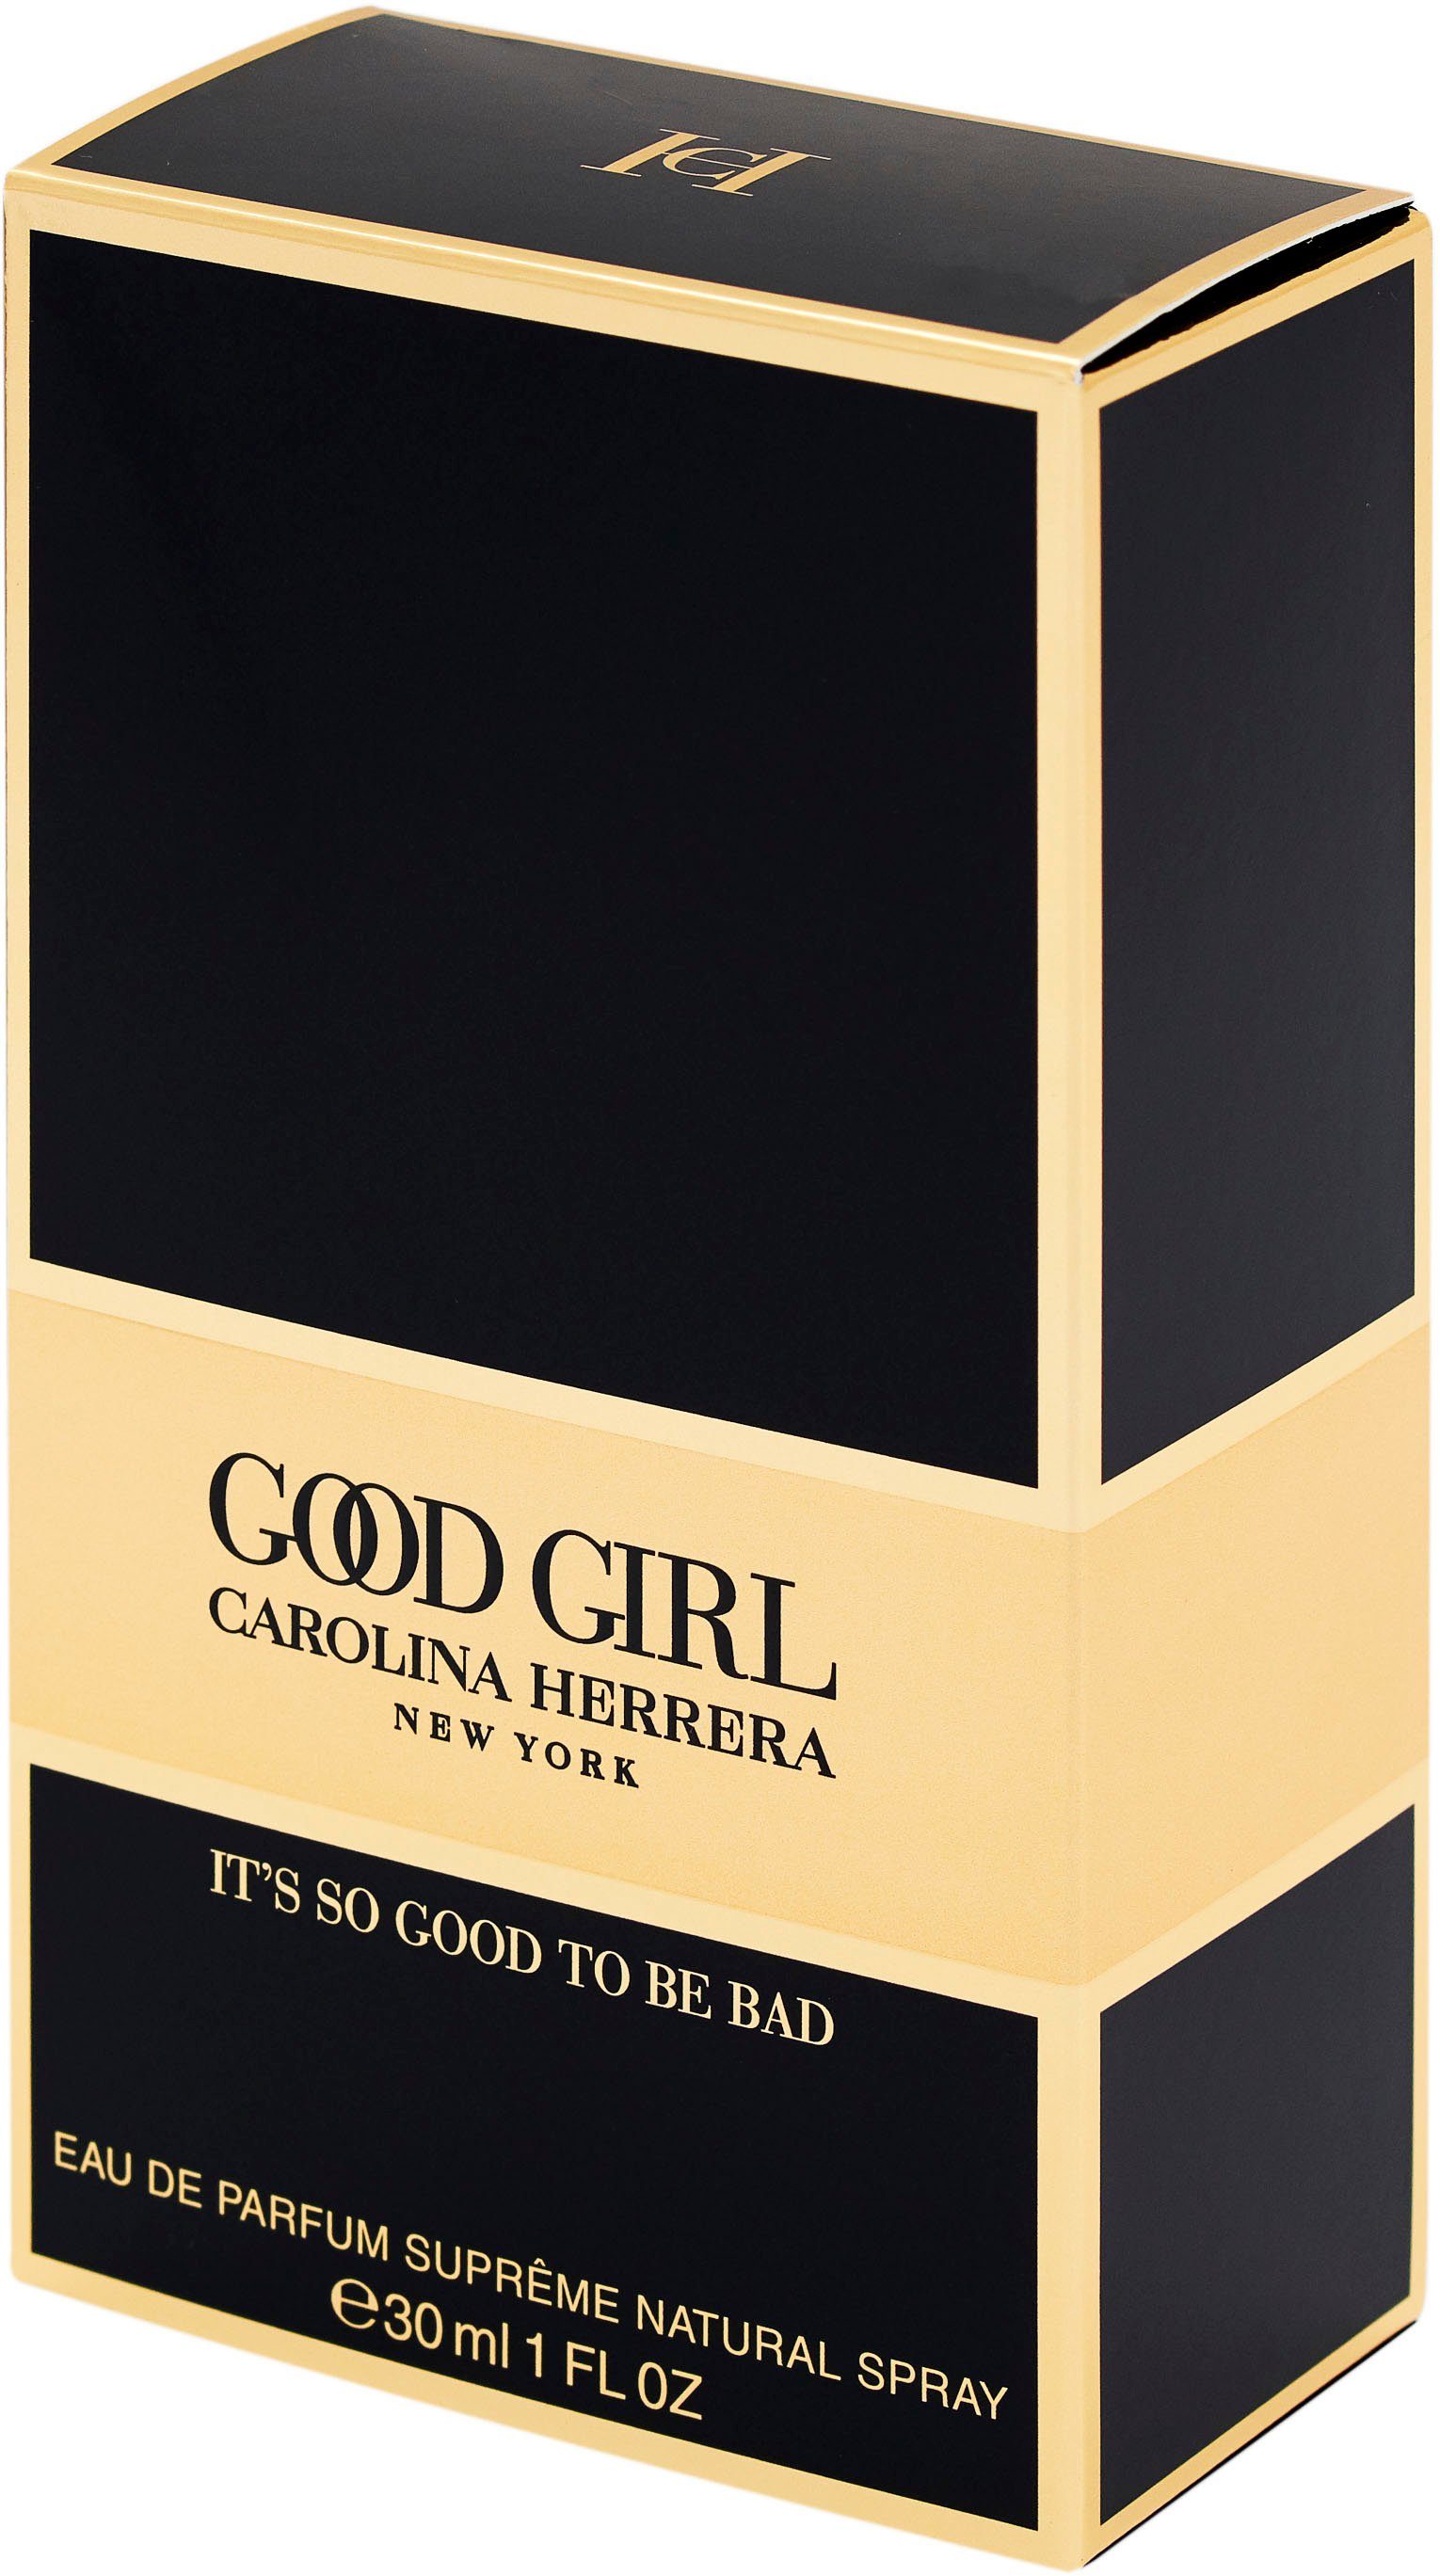 Carolina Herrera Eau de Supreme Parfum Girl Good